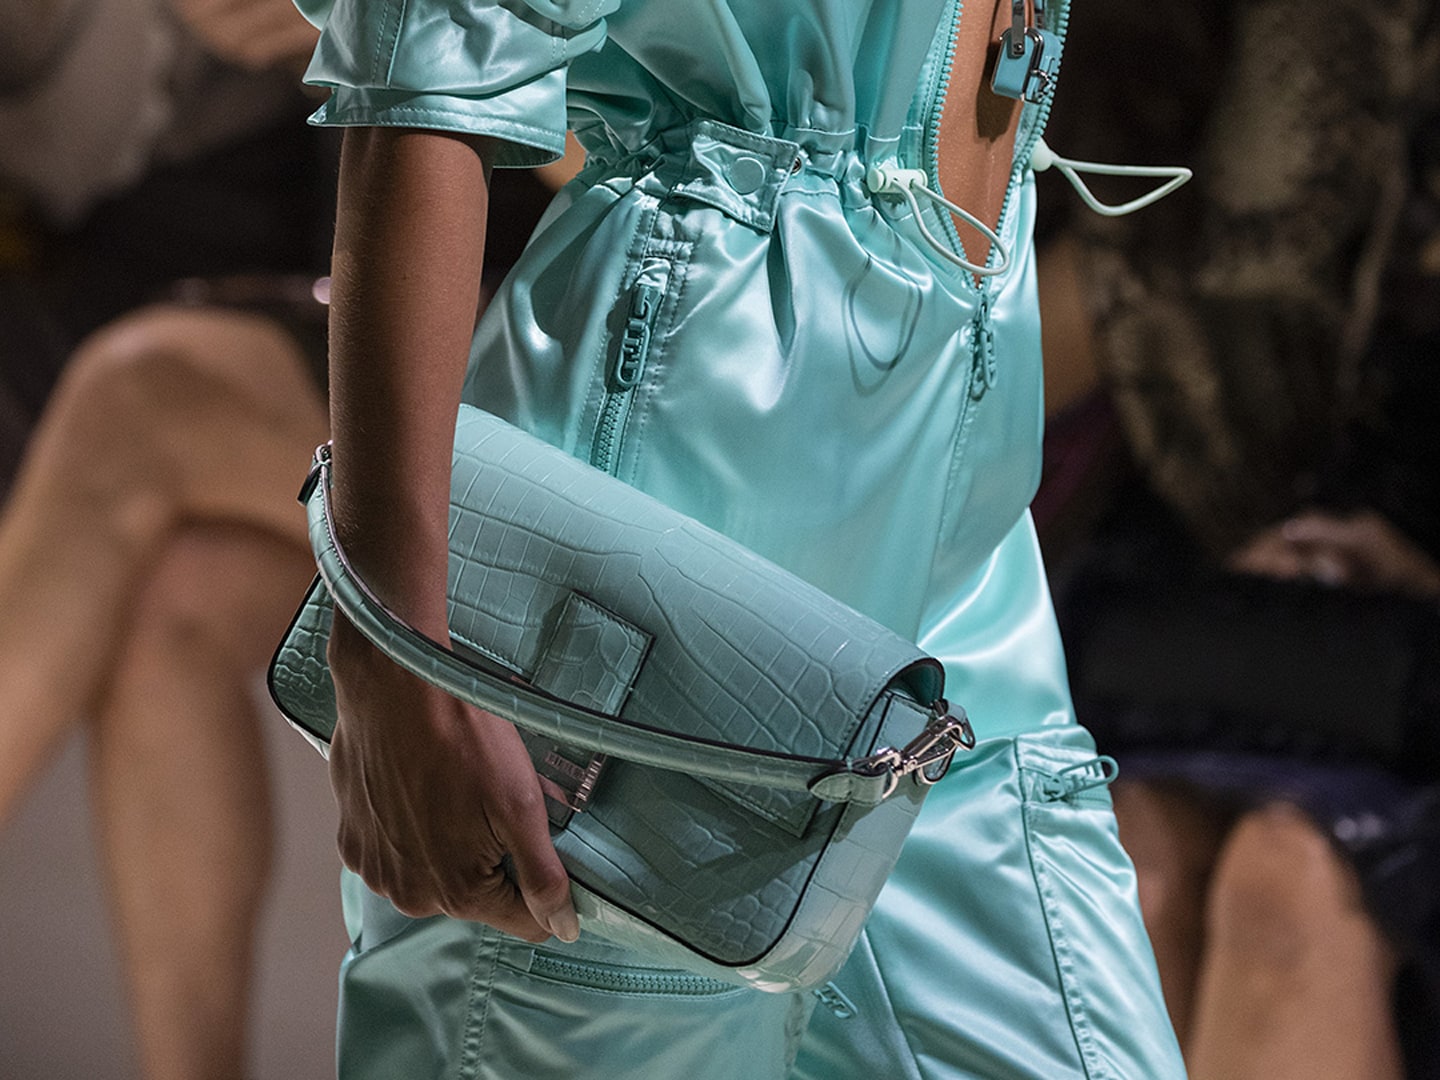 Fendi x Tiffany & Co. Baguette Bag Tiffany Blue